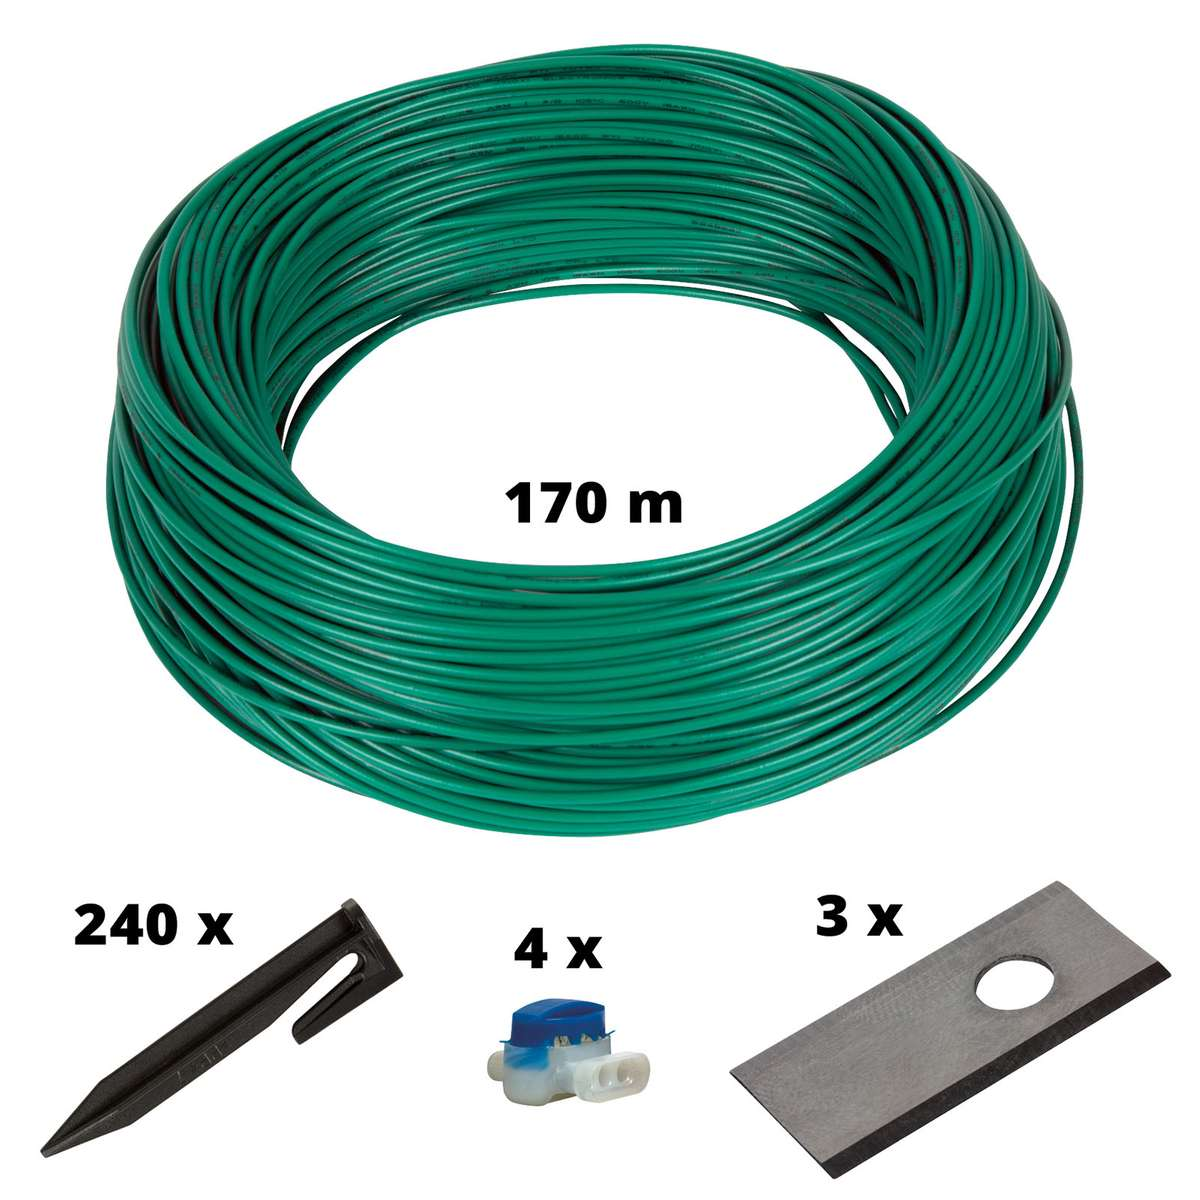 Mähroboter-Zubehör, Cable Kit EINHELL 700m2 Mehrfarbig